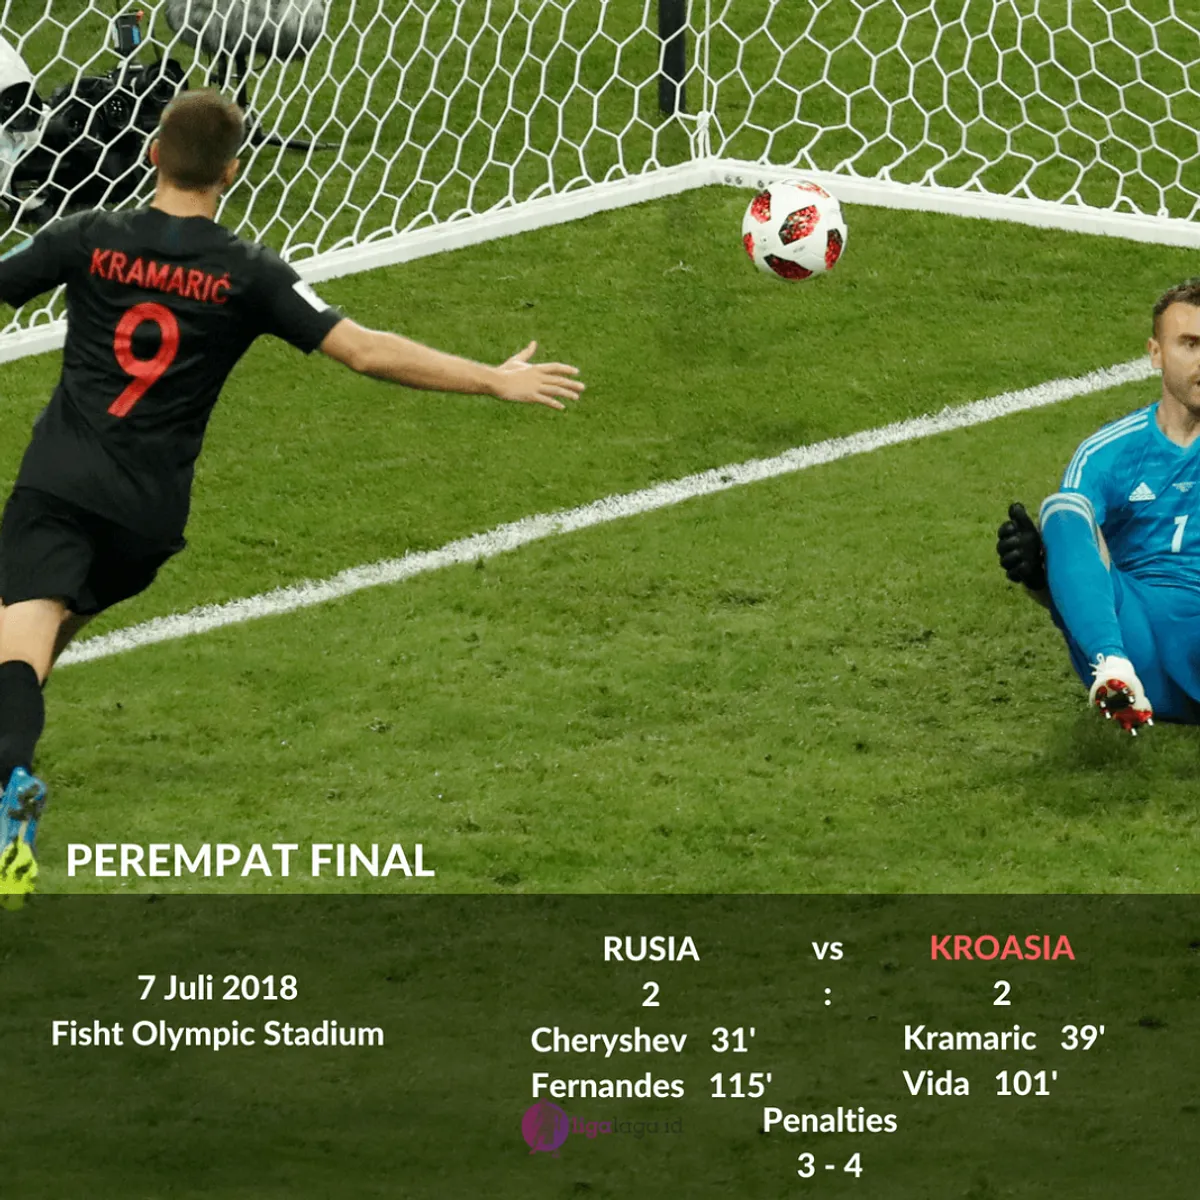 Pengantar ke Piala Dunia 2018: Kroasia dan Kemenangan Impresif